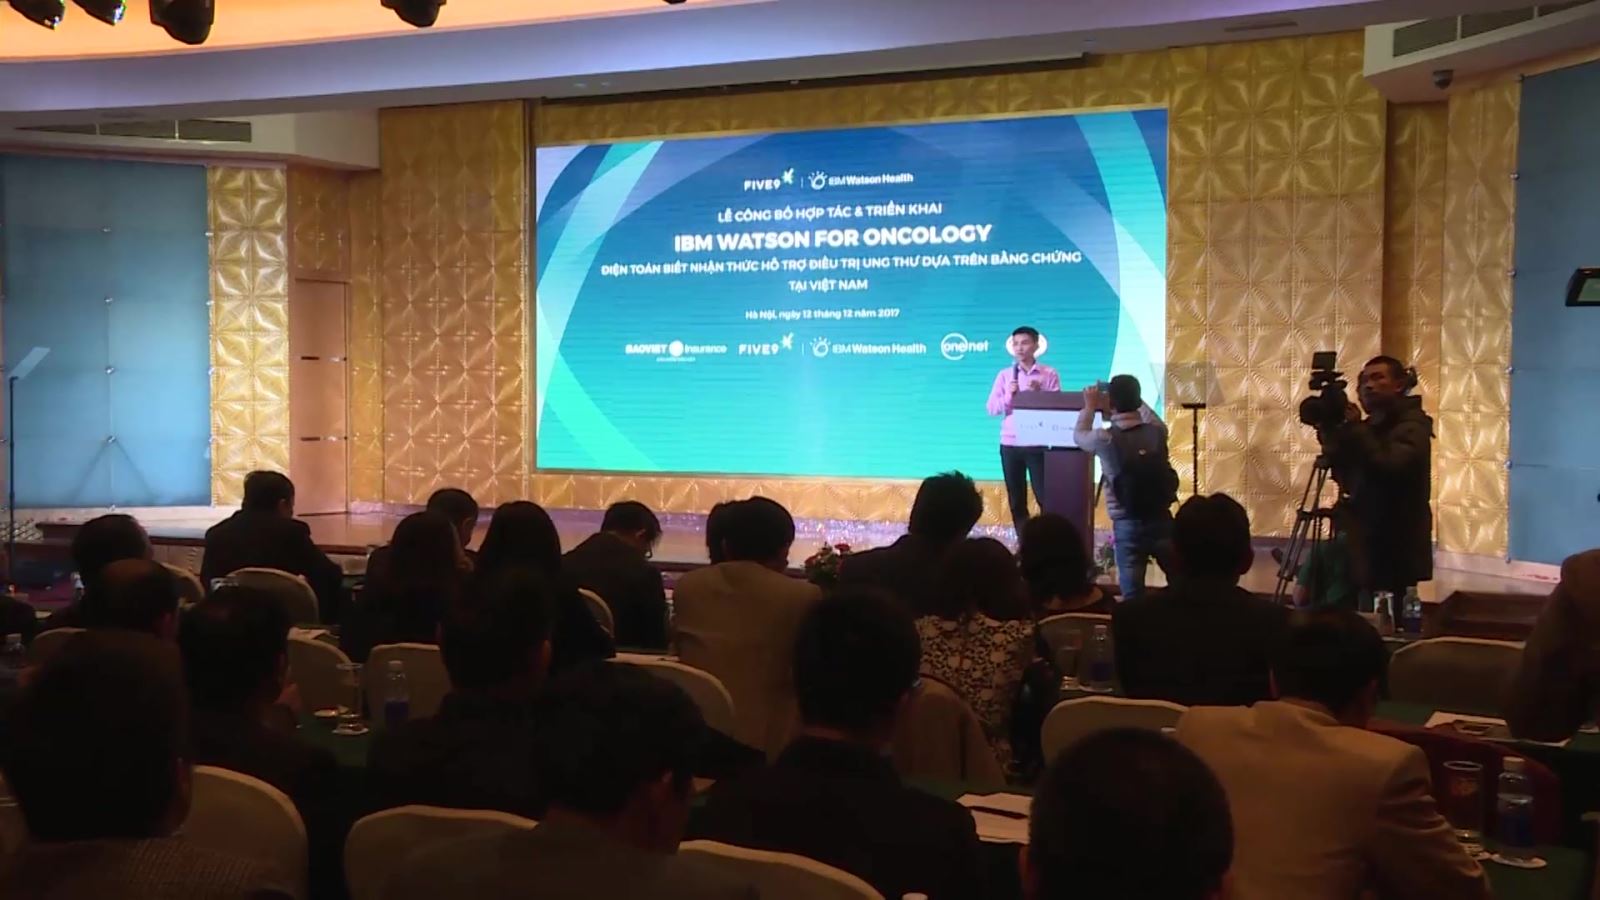 Lễ công bố hợp tác và chuyển giao công nghệ điện toán biết nhận thức hỗ trợ điều trị ung thư dựa trên bằng chứng tại Việt Nam